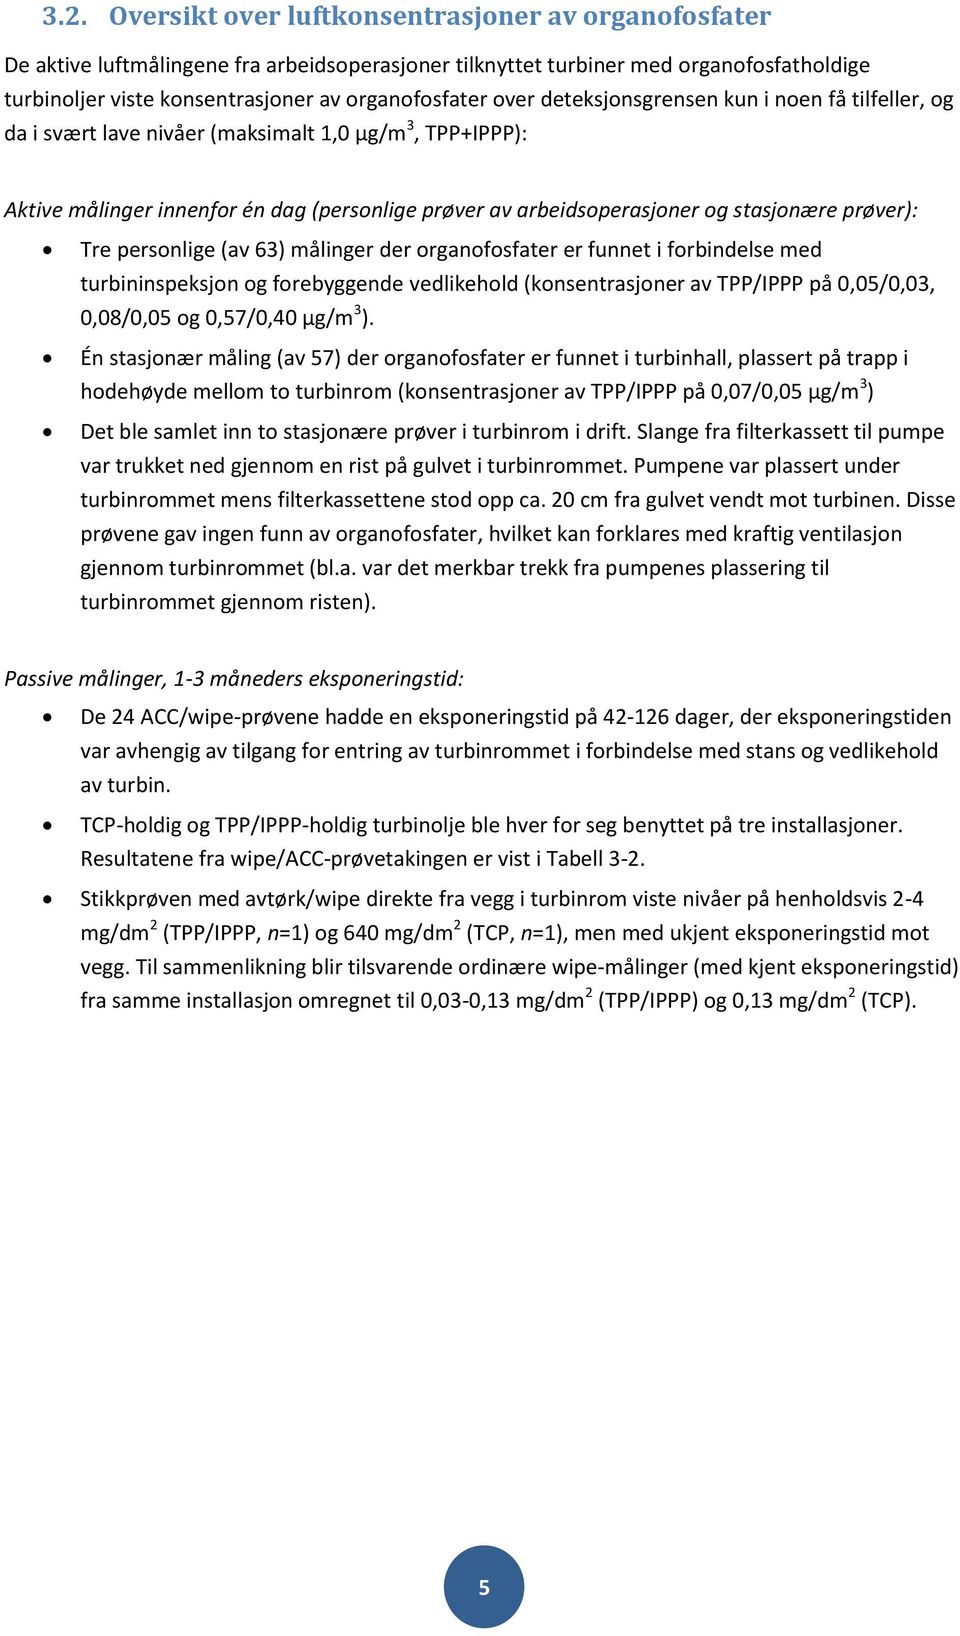 prøver): Tre personlige (av 63) målinger der organofosfater er funnet i forbindelse med turbininspeksjon og forebyggende vedlikehold (konsentrasjoner av TPP/IPPP på 0,05/0,03, 0,08/0,05 og 0,57/0,40